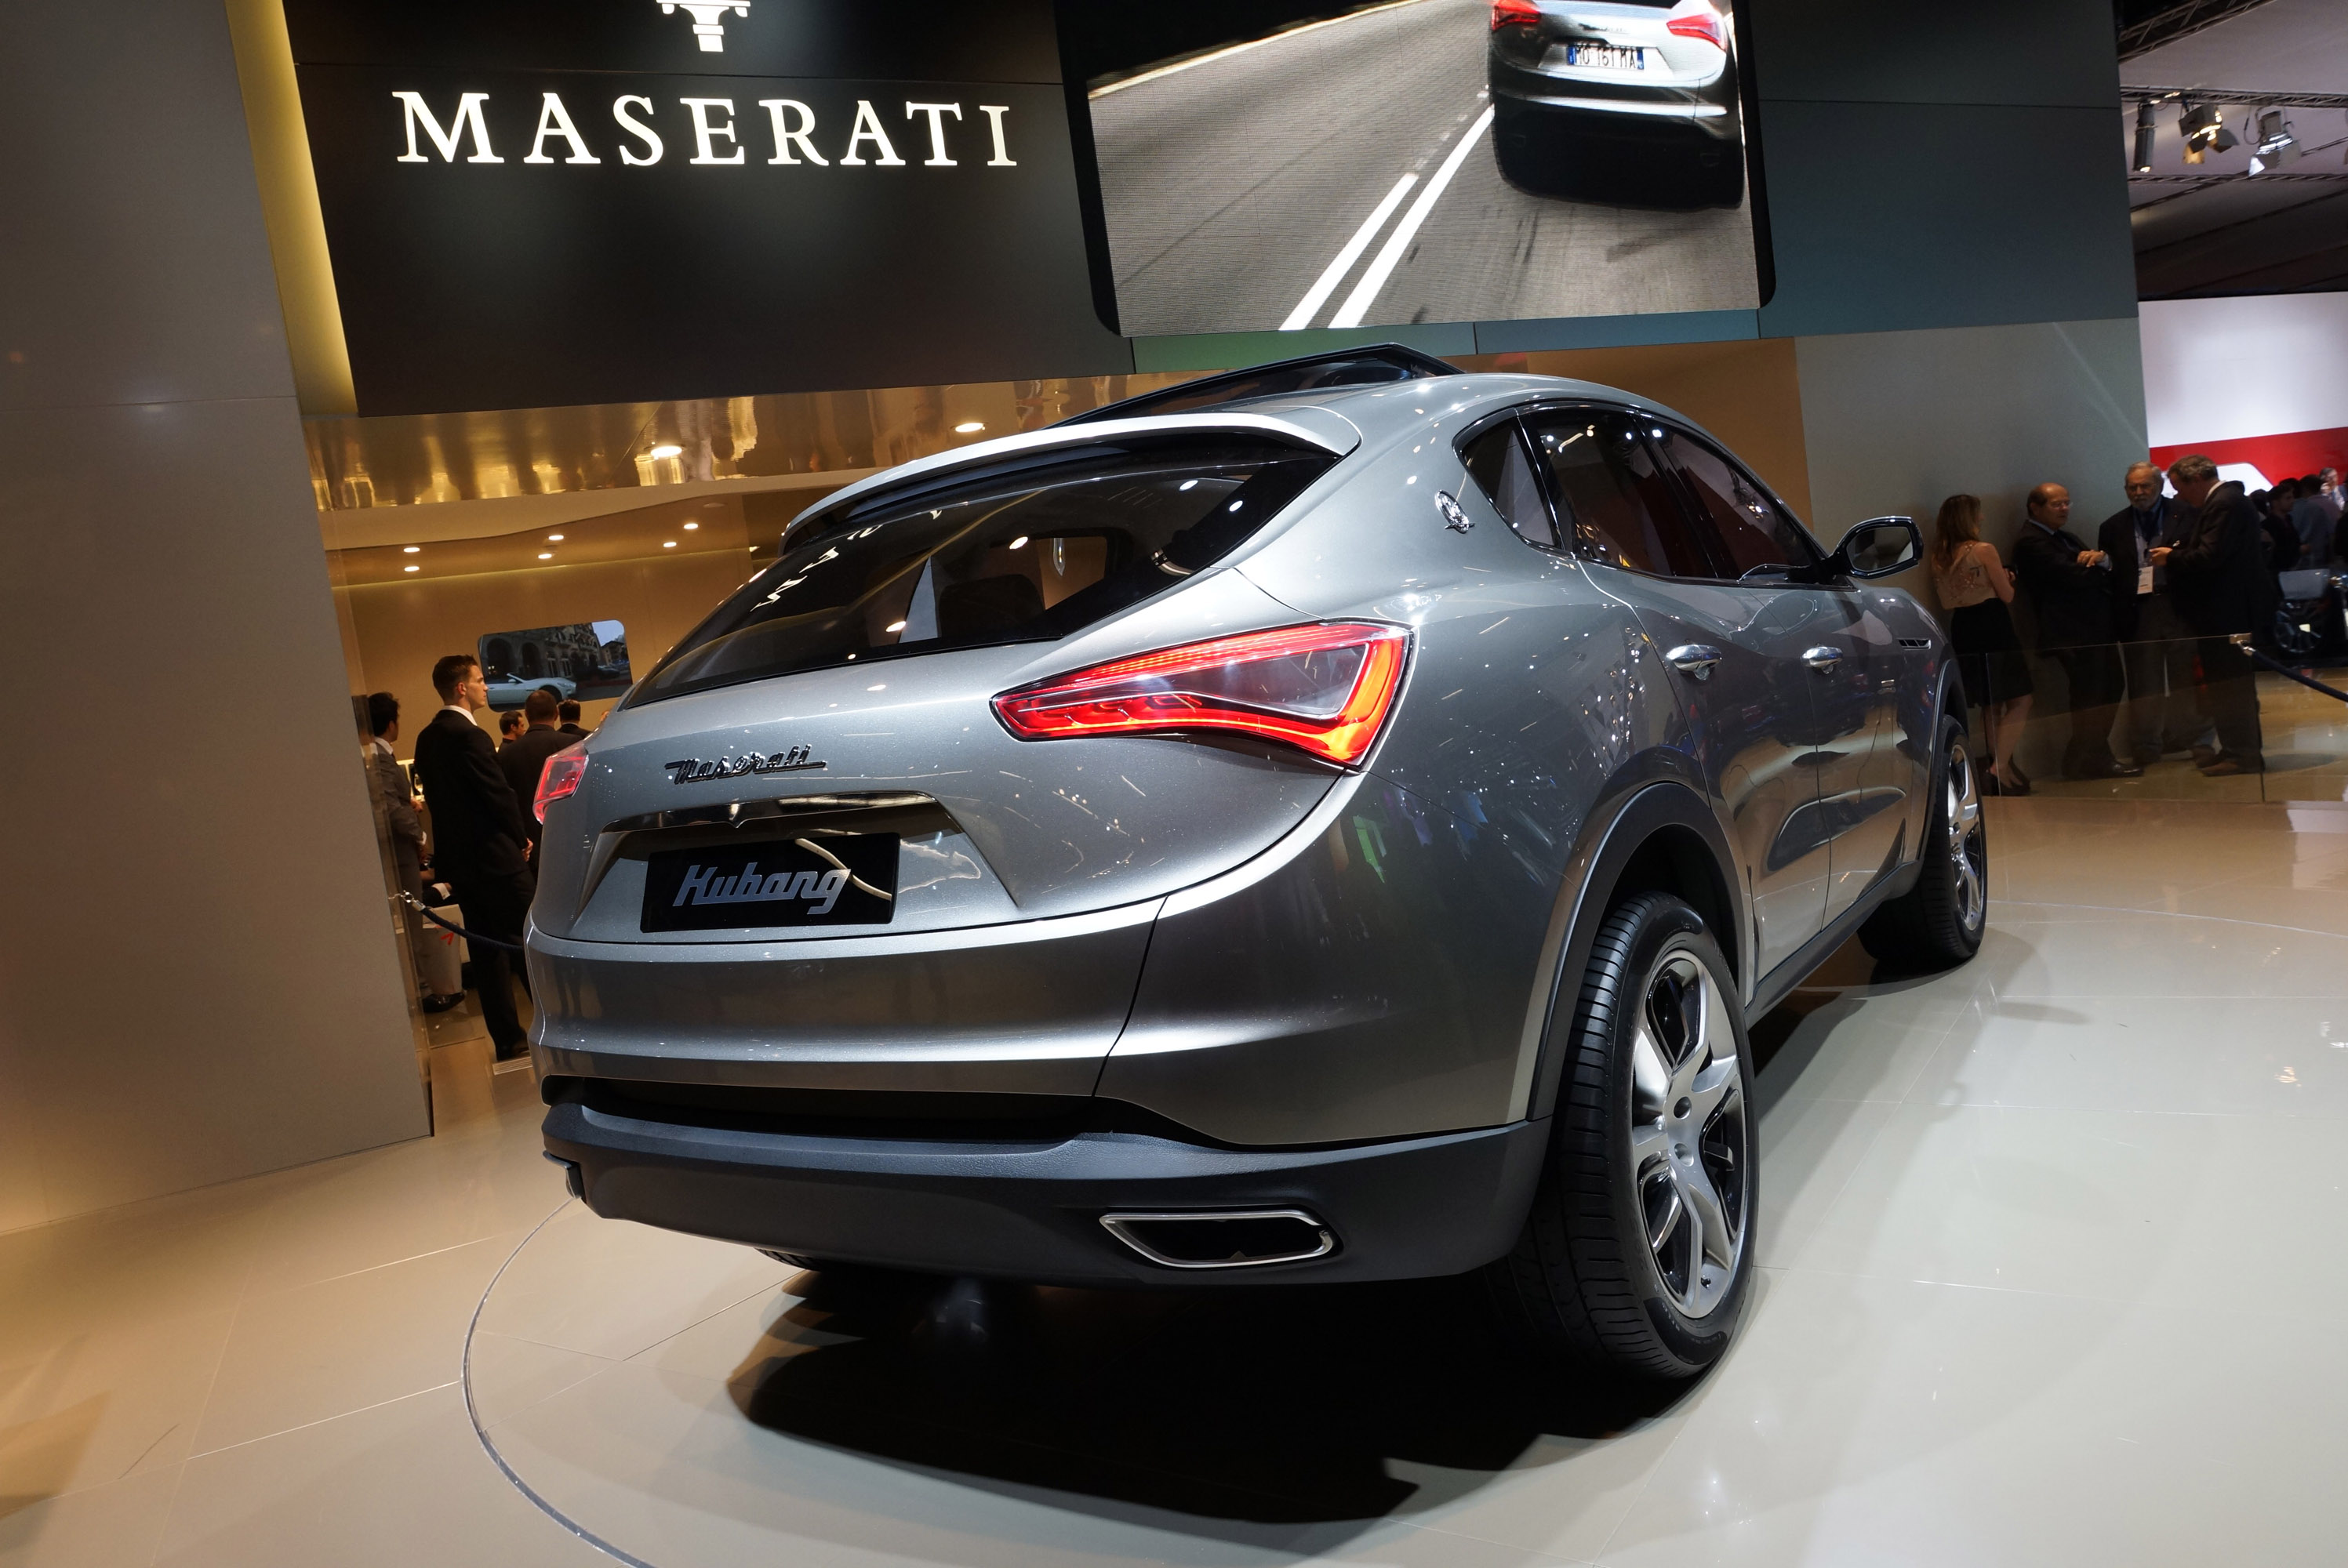 Maserati Kubang Frankfurt